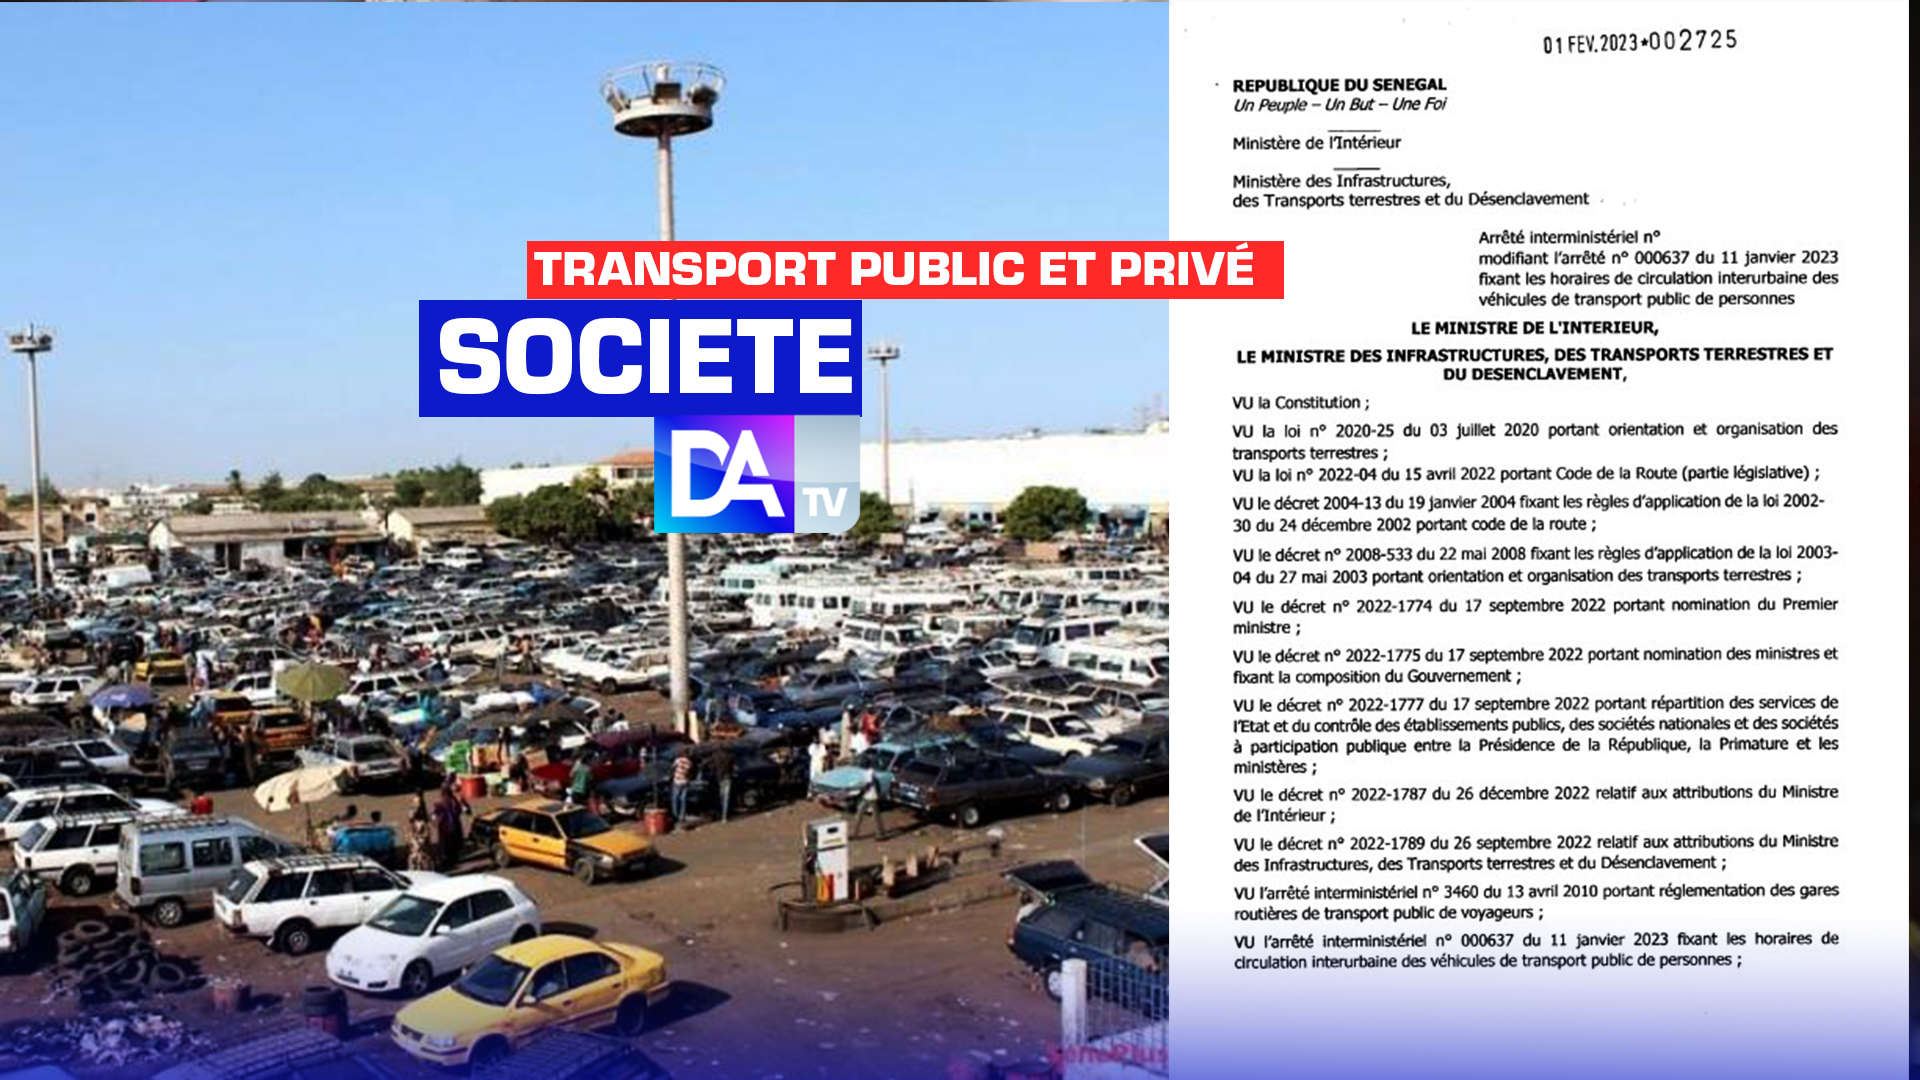 Transport public et privé : Les horaires de transport interurbain modifiés… (Arrêté interministériel)